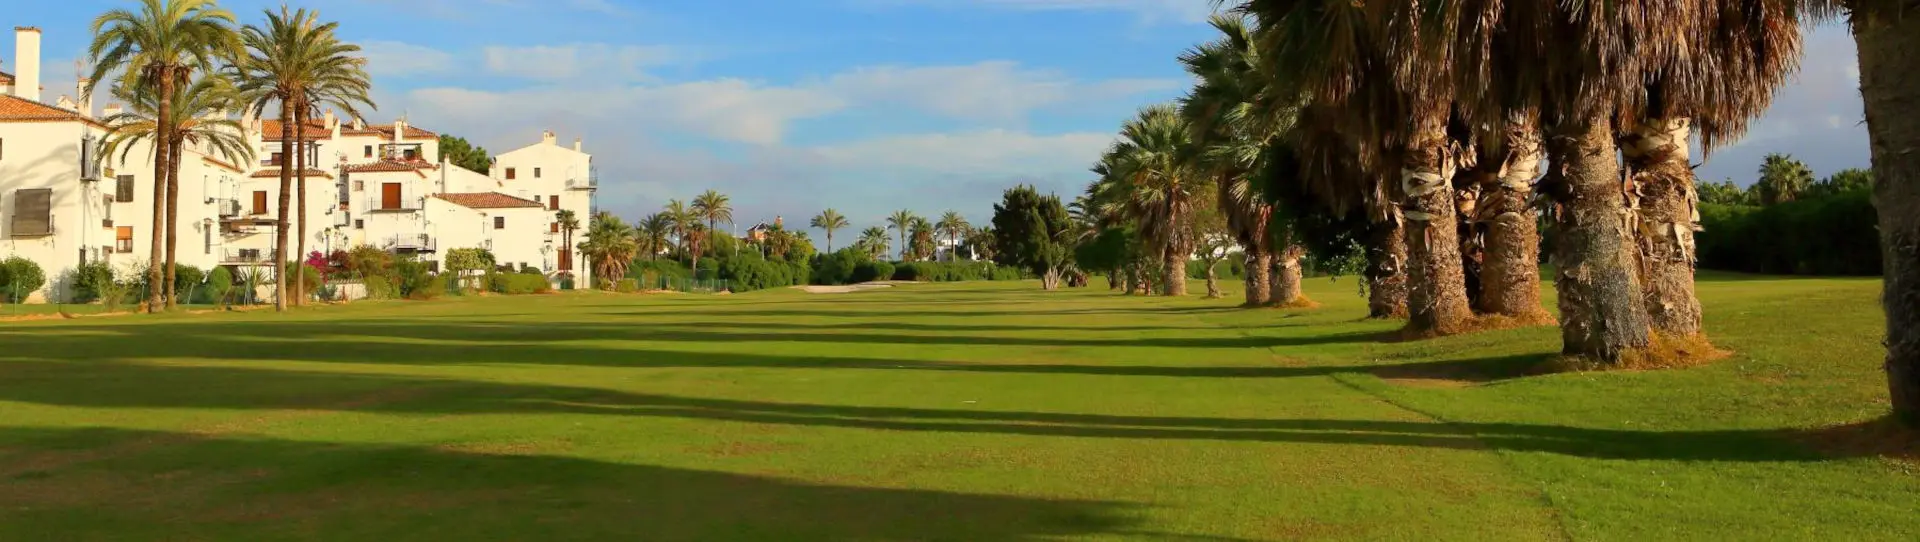 Spain golf courses - Los Moriscos Golf Club - Photo 1